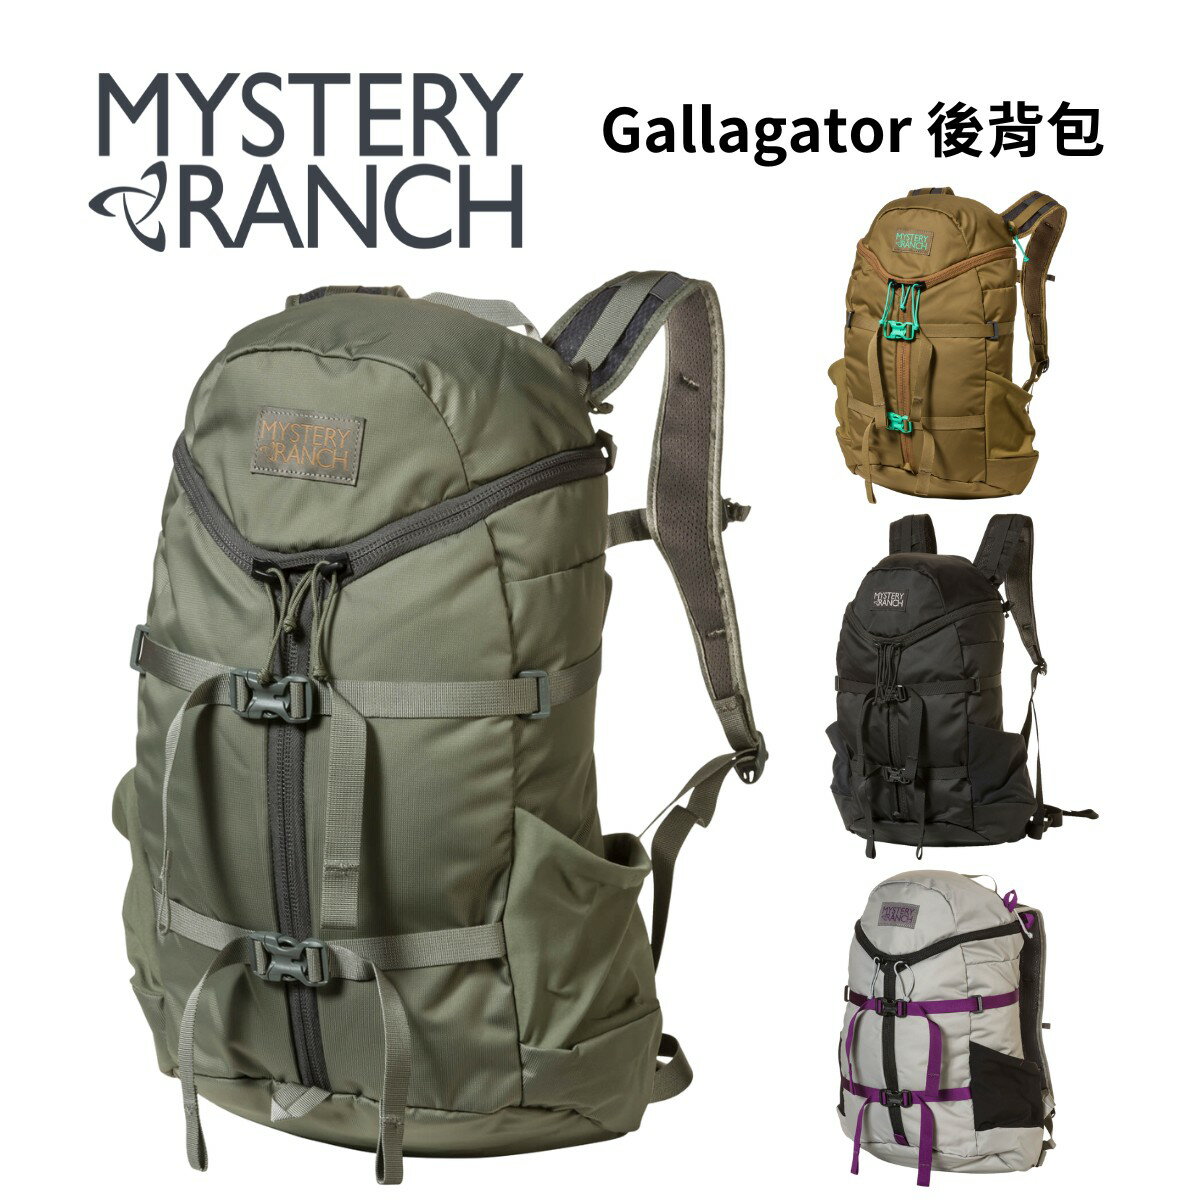 【Mystery Ranch】Gallagator 後背包